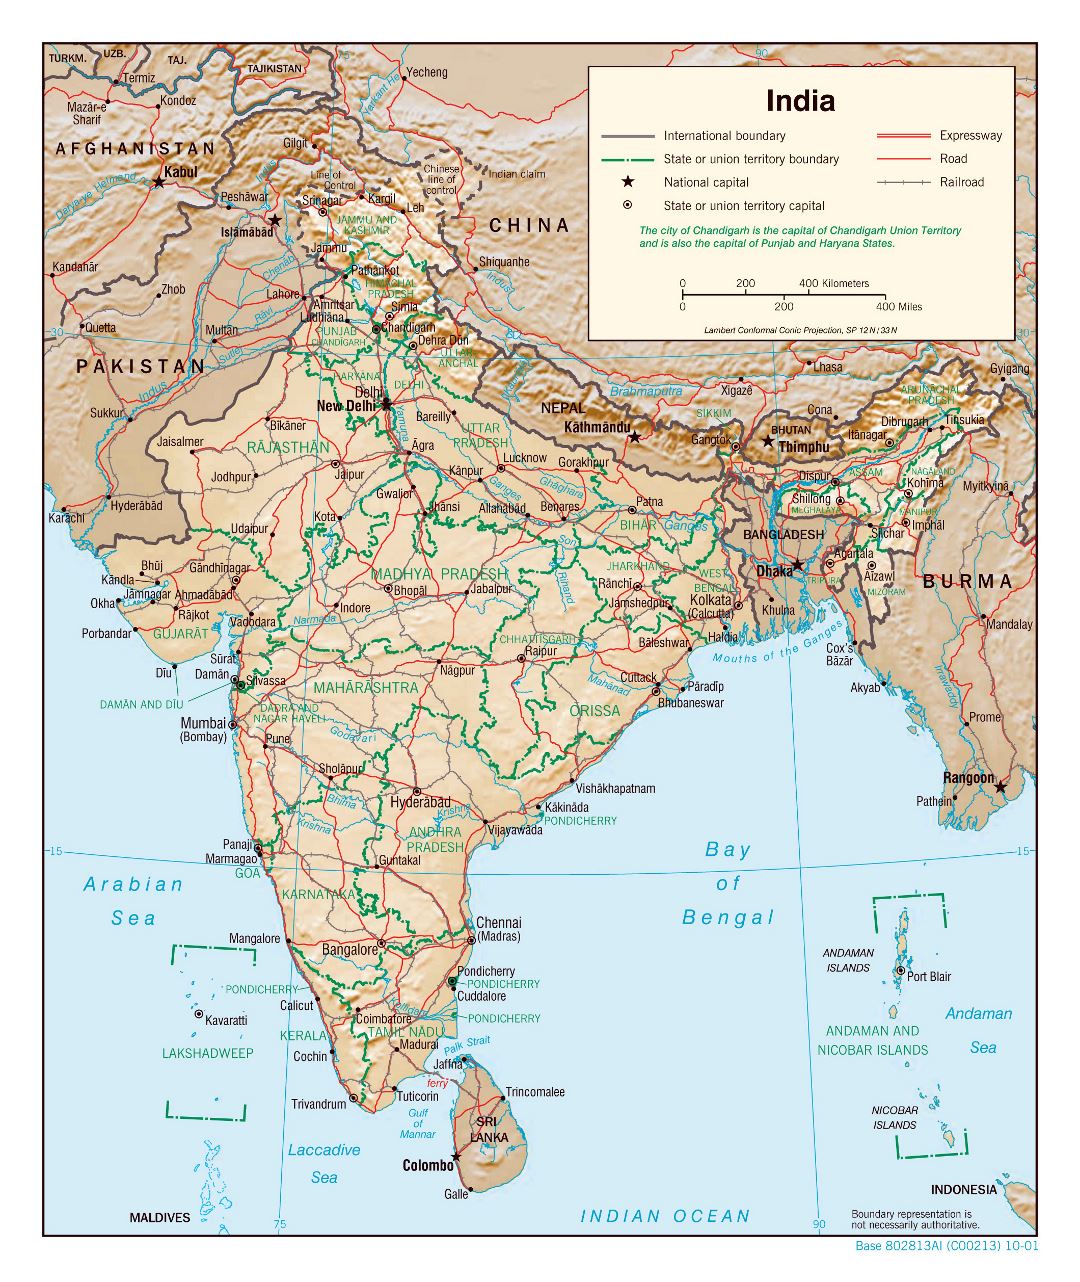 Grande detallado mapa político y administrativo de la India con socorro, carreteras, ferrocarriles y principales ciudades - 2001